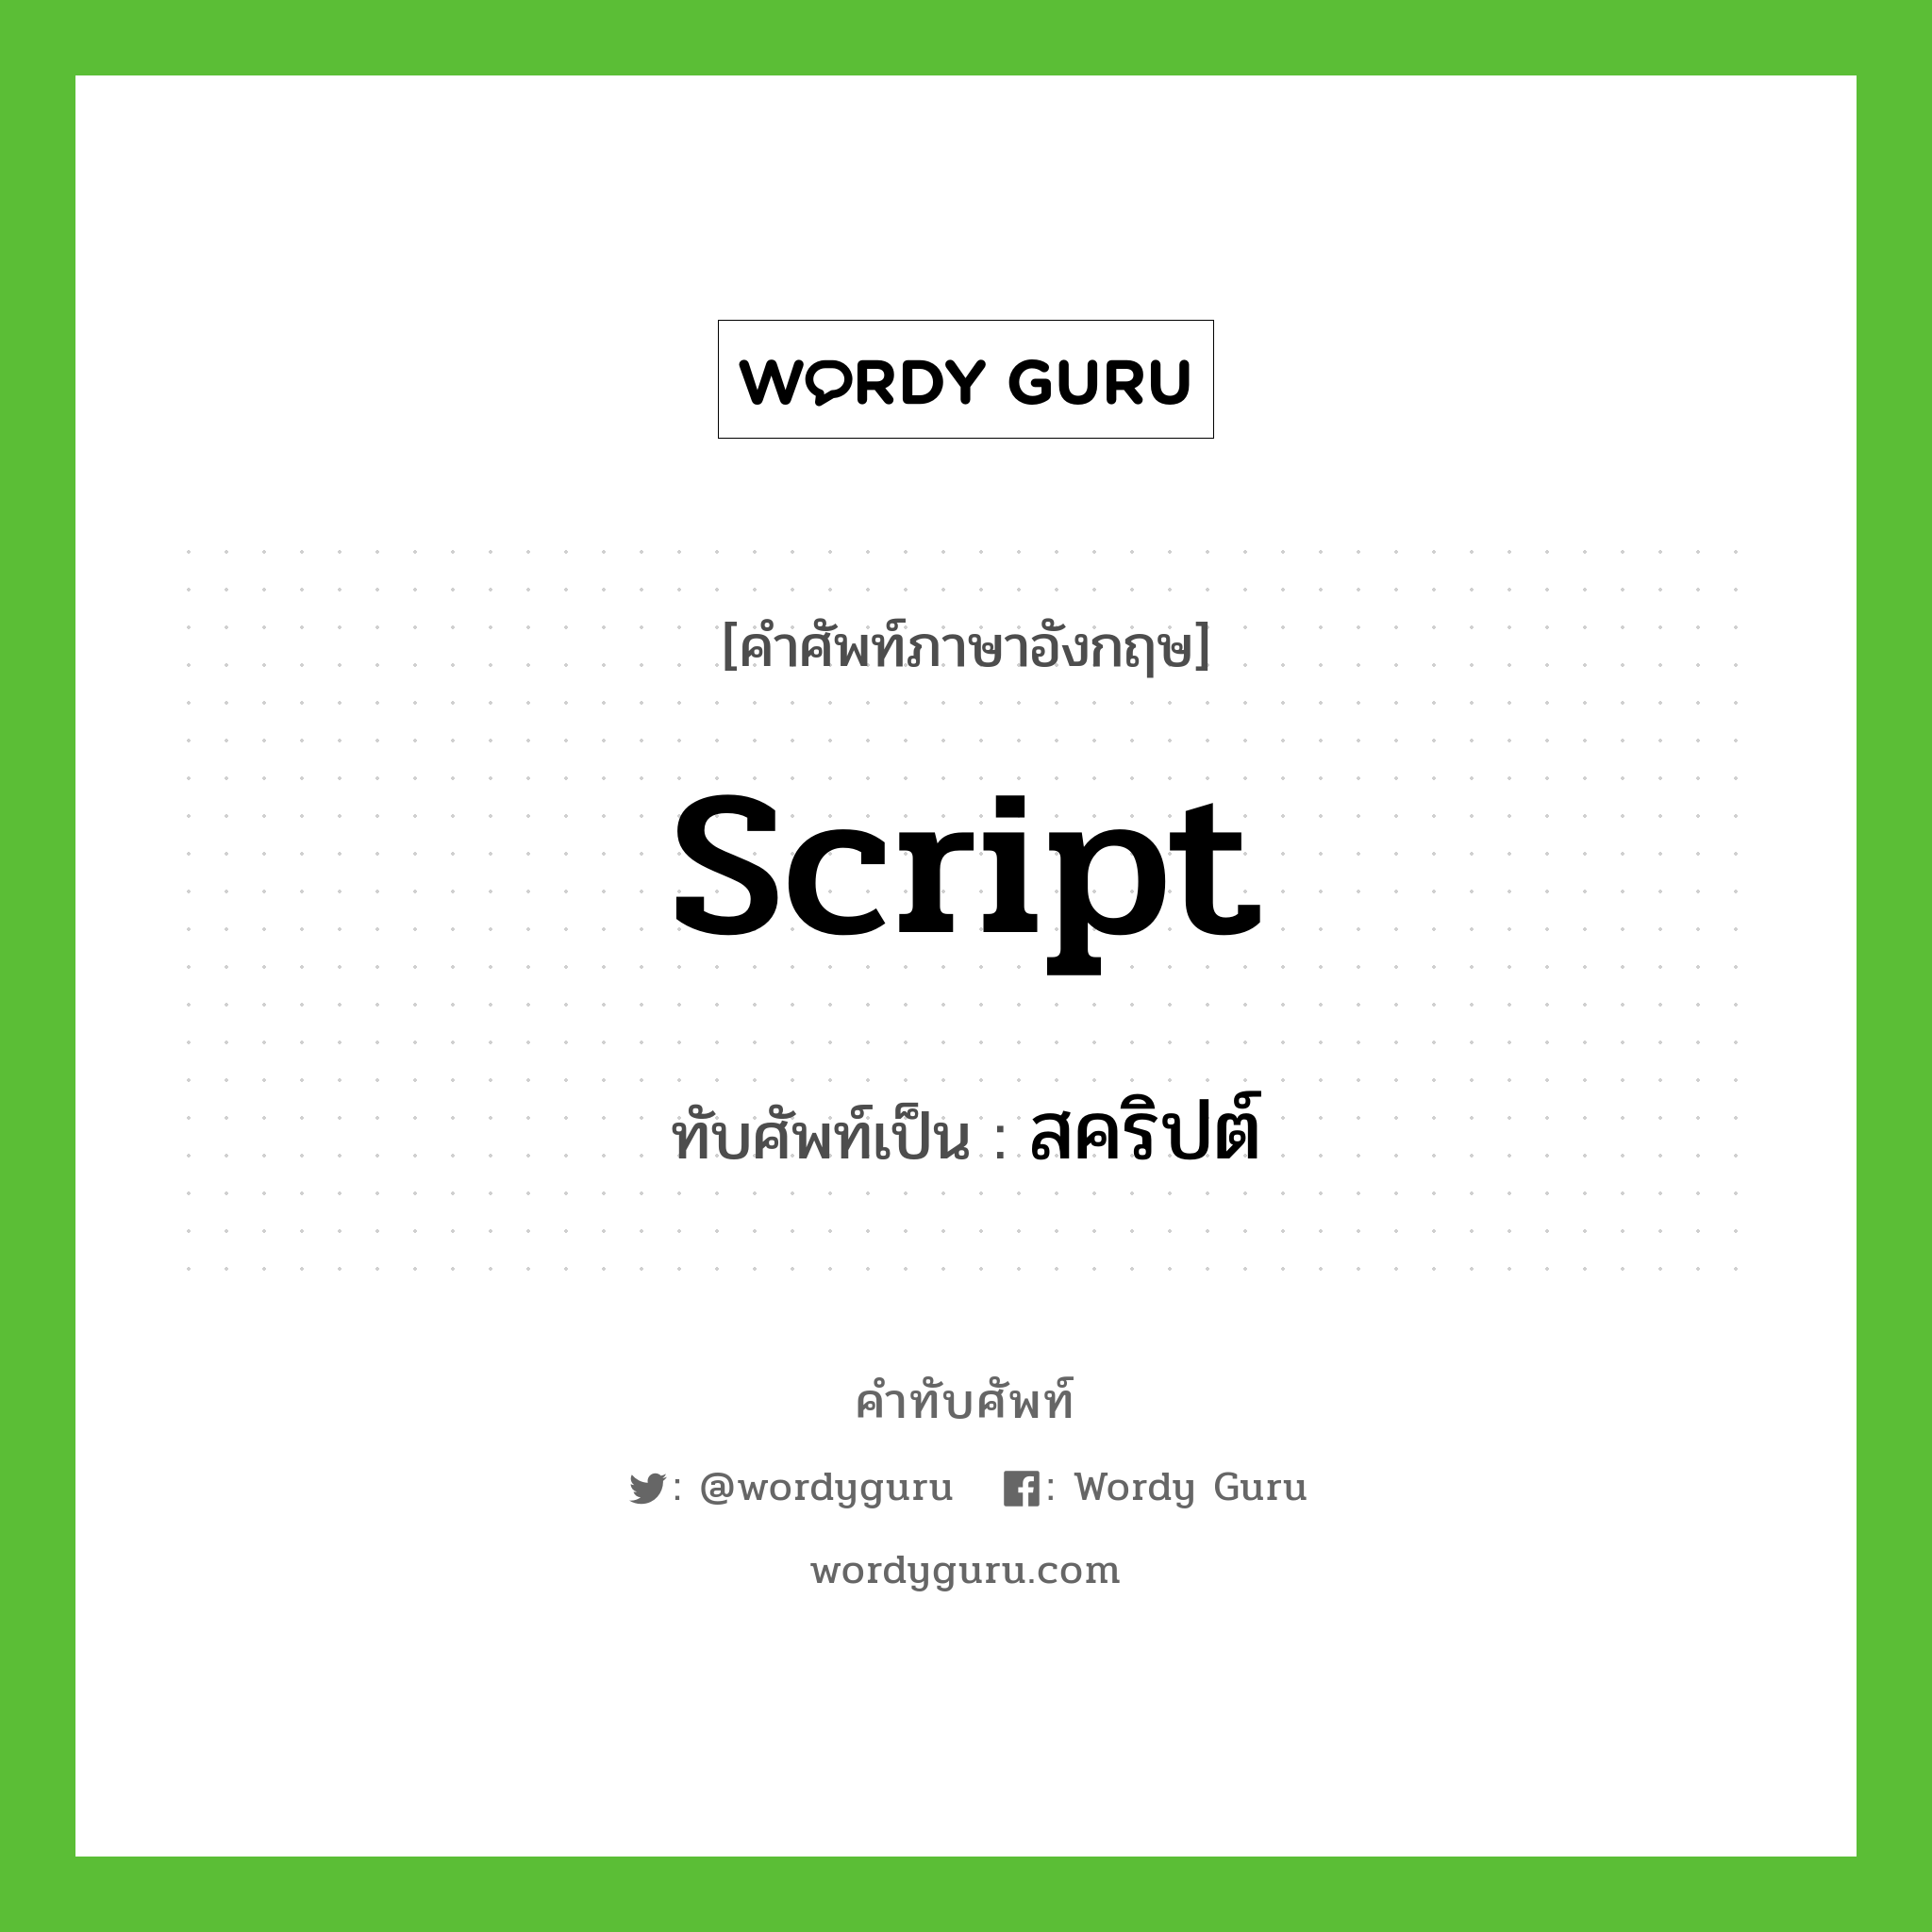 script เขียนเป็นคำไทยว่าอะไร?, คำศัพท์ภาษาอังกฤษ script ทับศัพท์เป็น สคริปต์